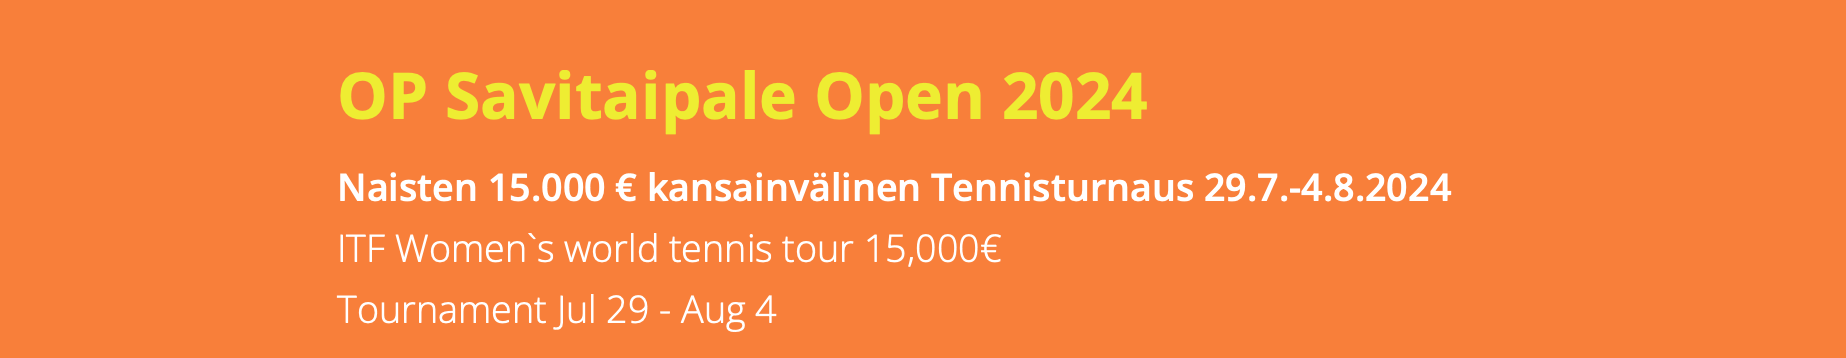 Naisten 15.000 € kansainvälinen Tennisturnaus 29.7.-4.8.2024